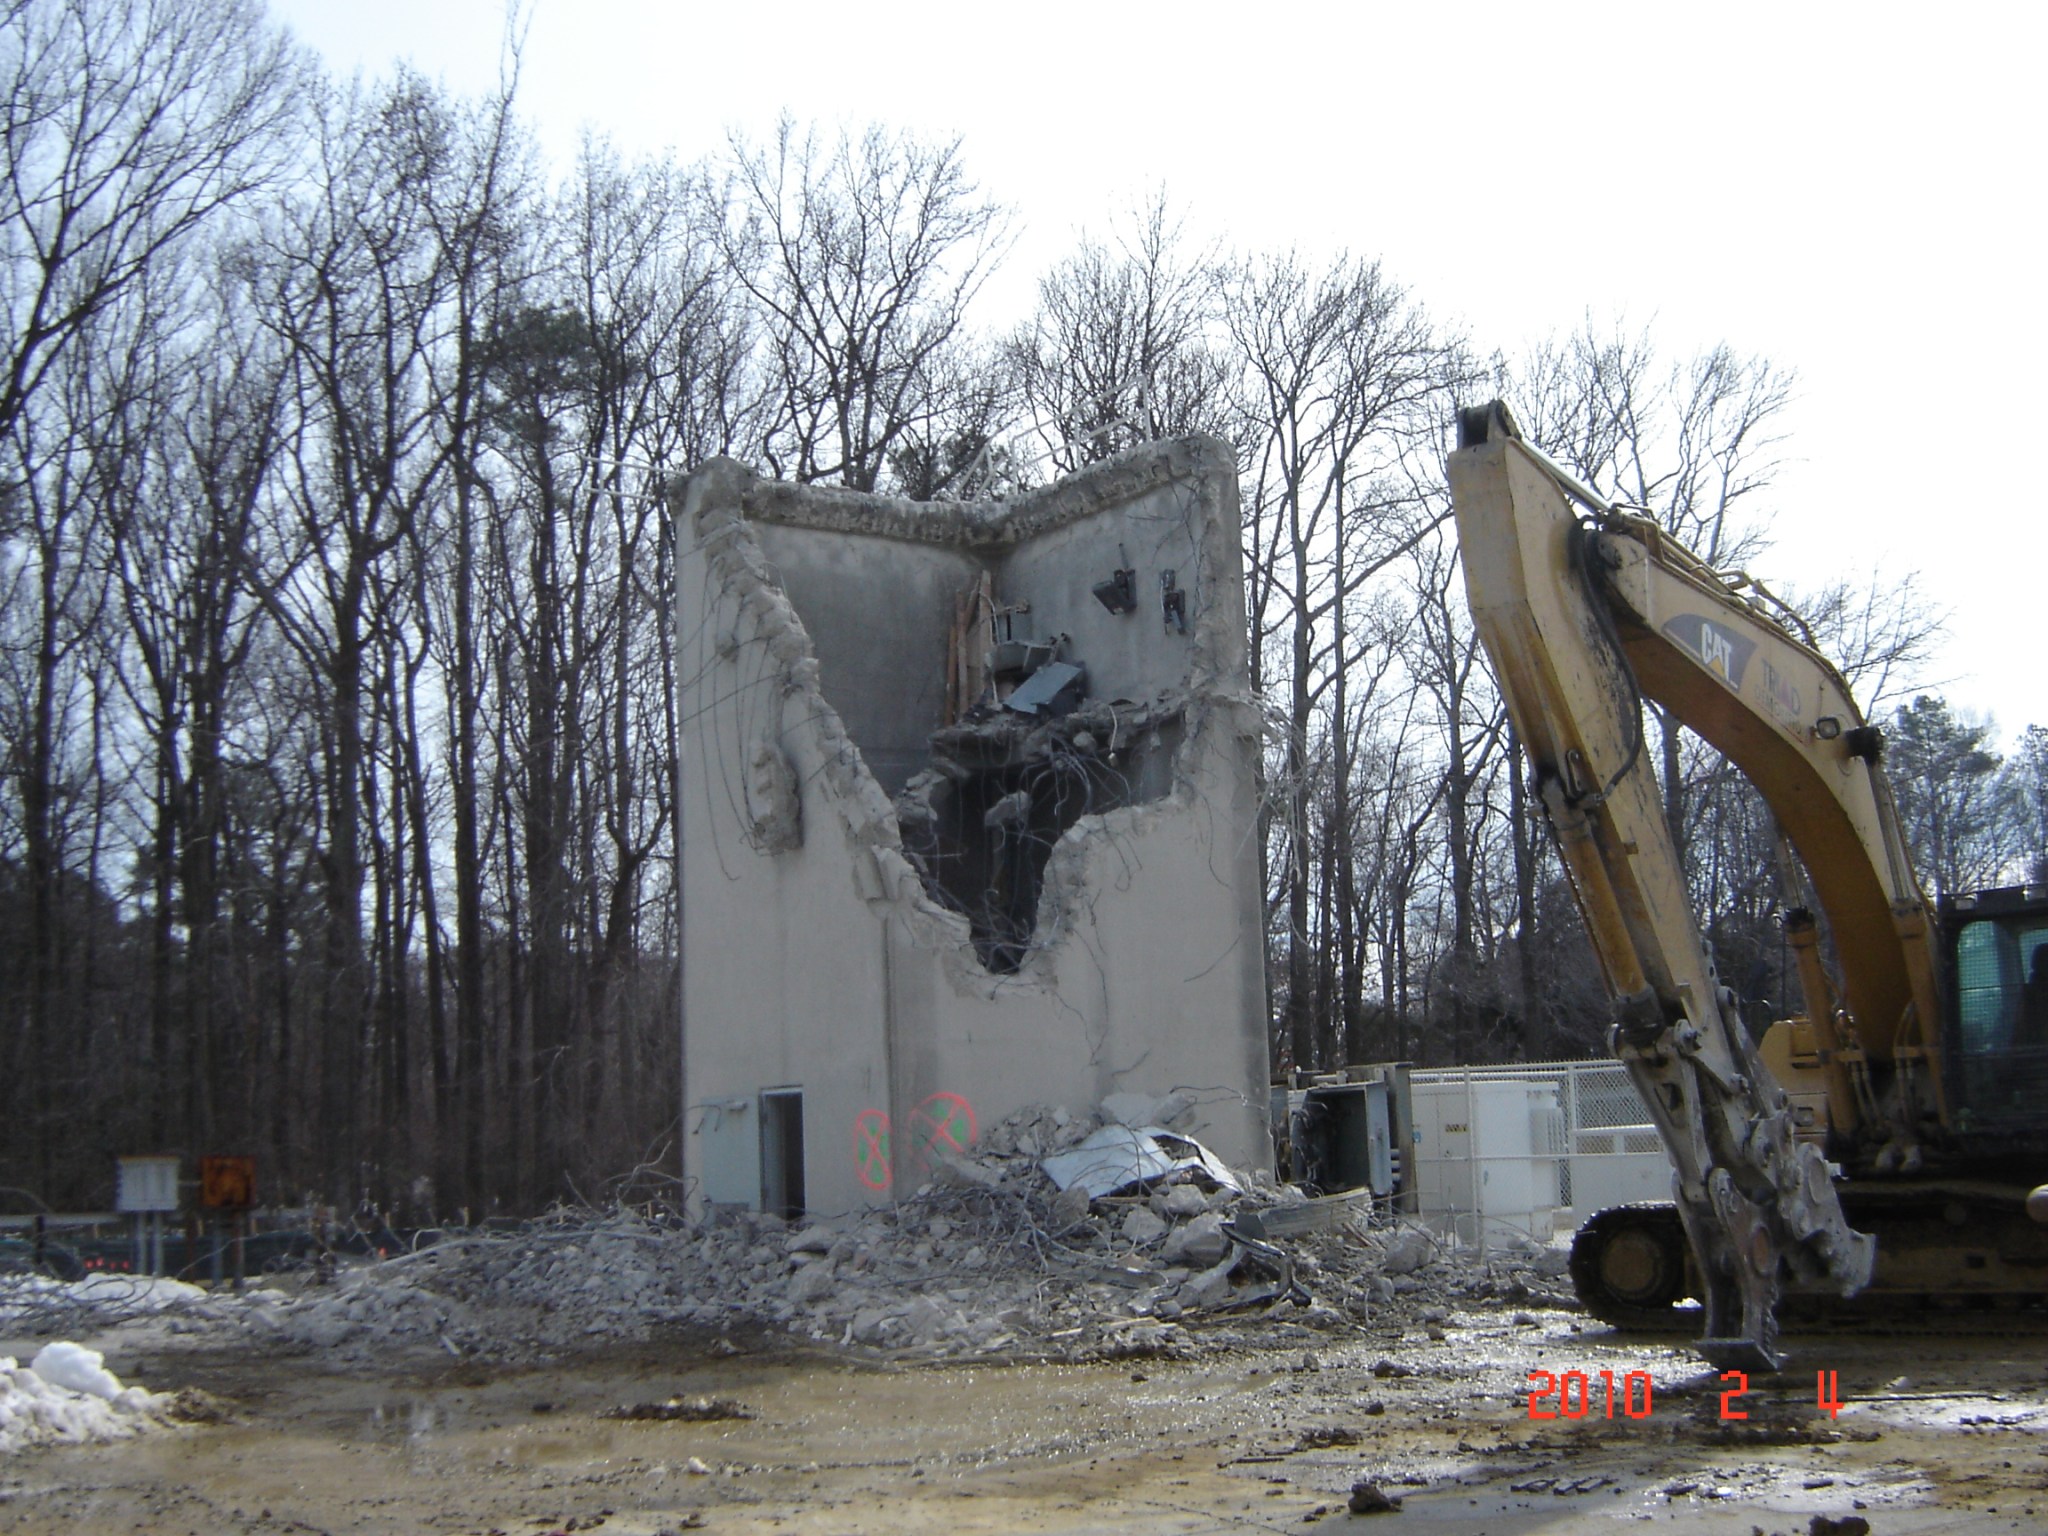 Demolition in 2010.